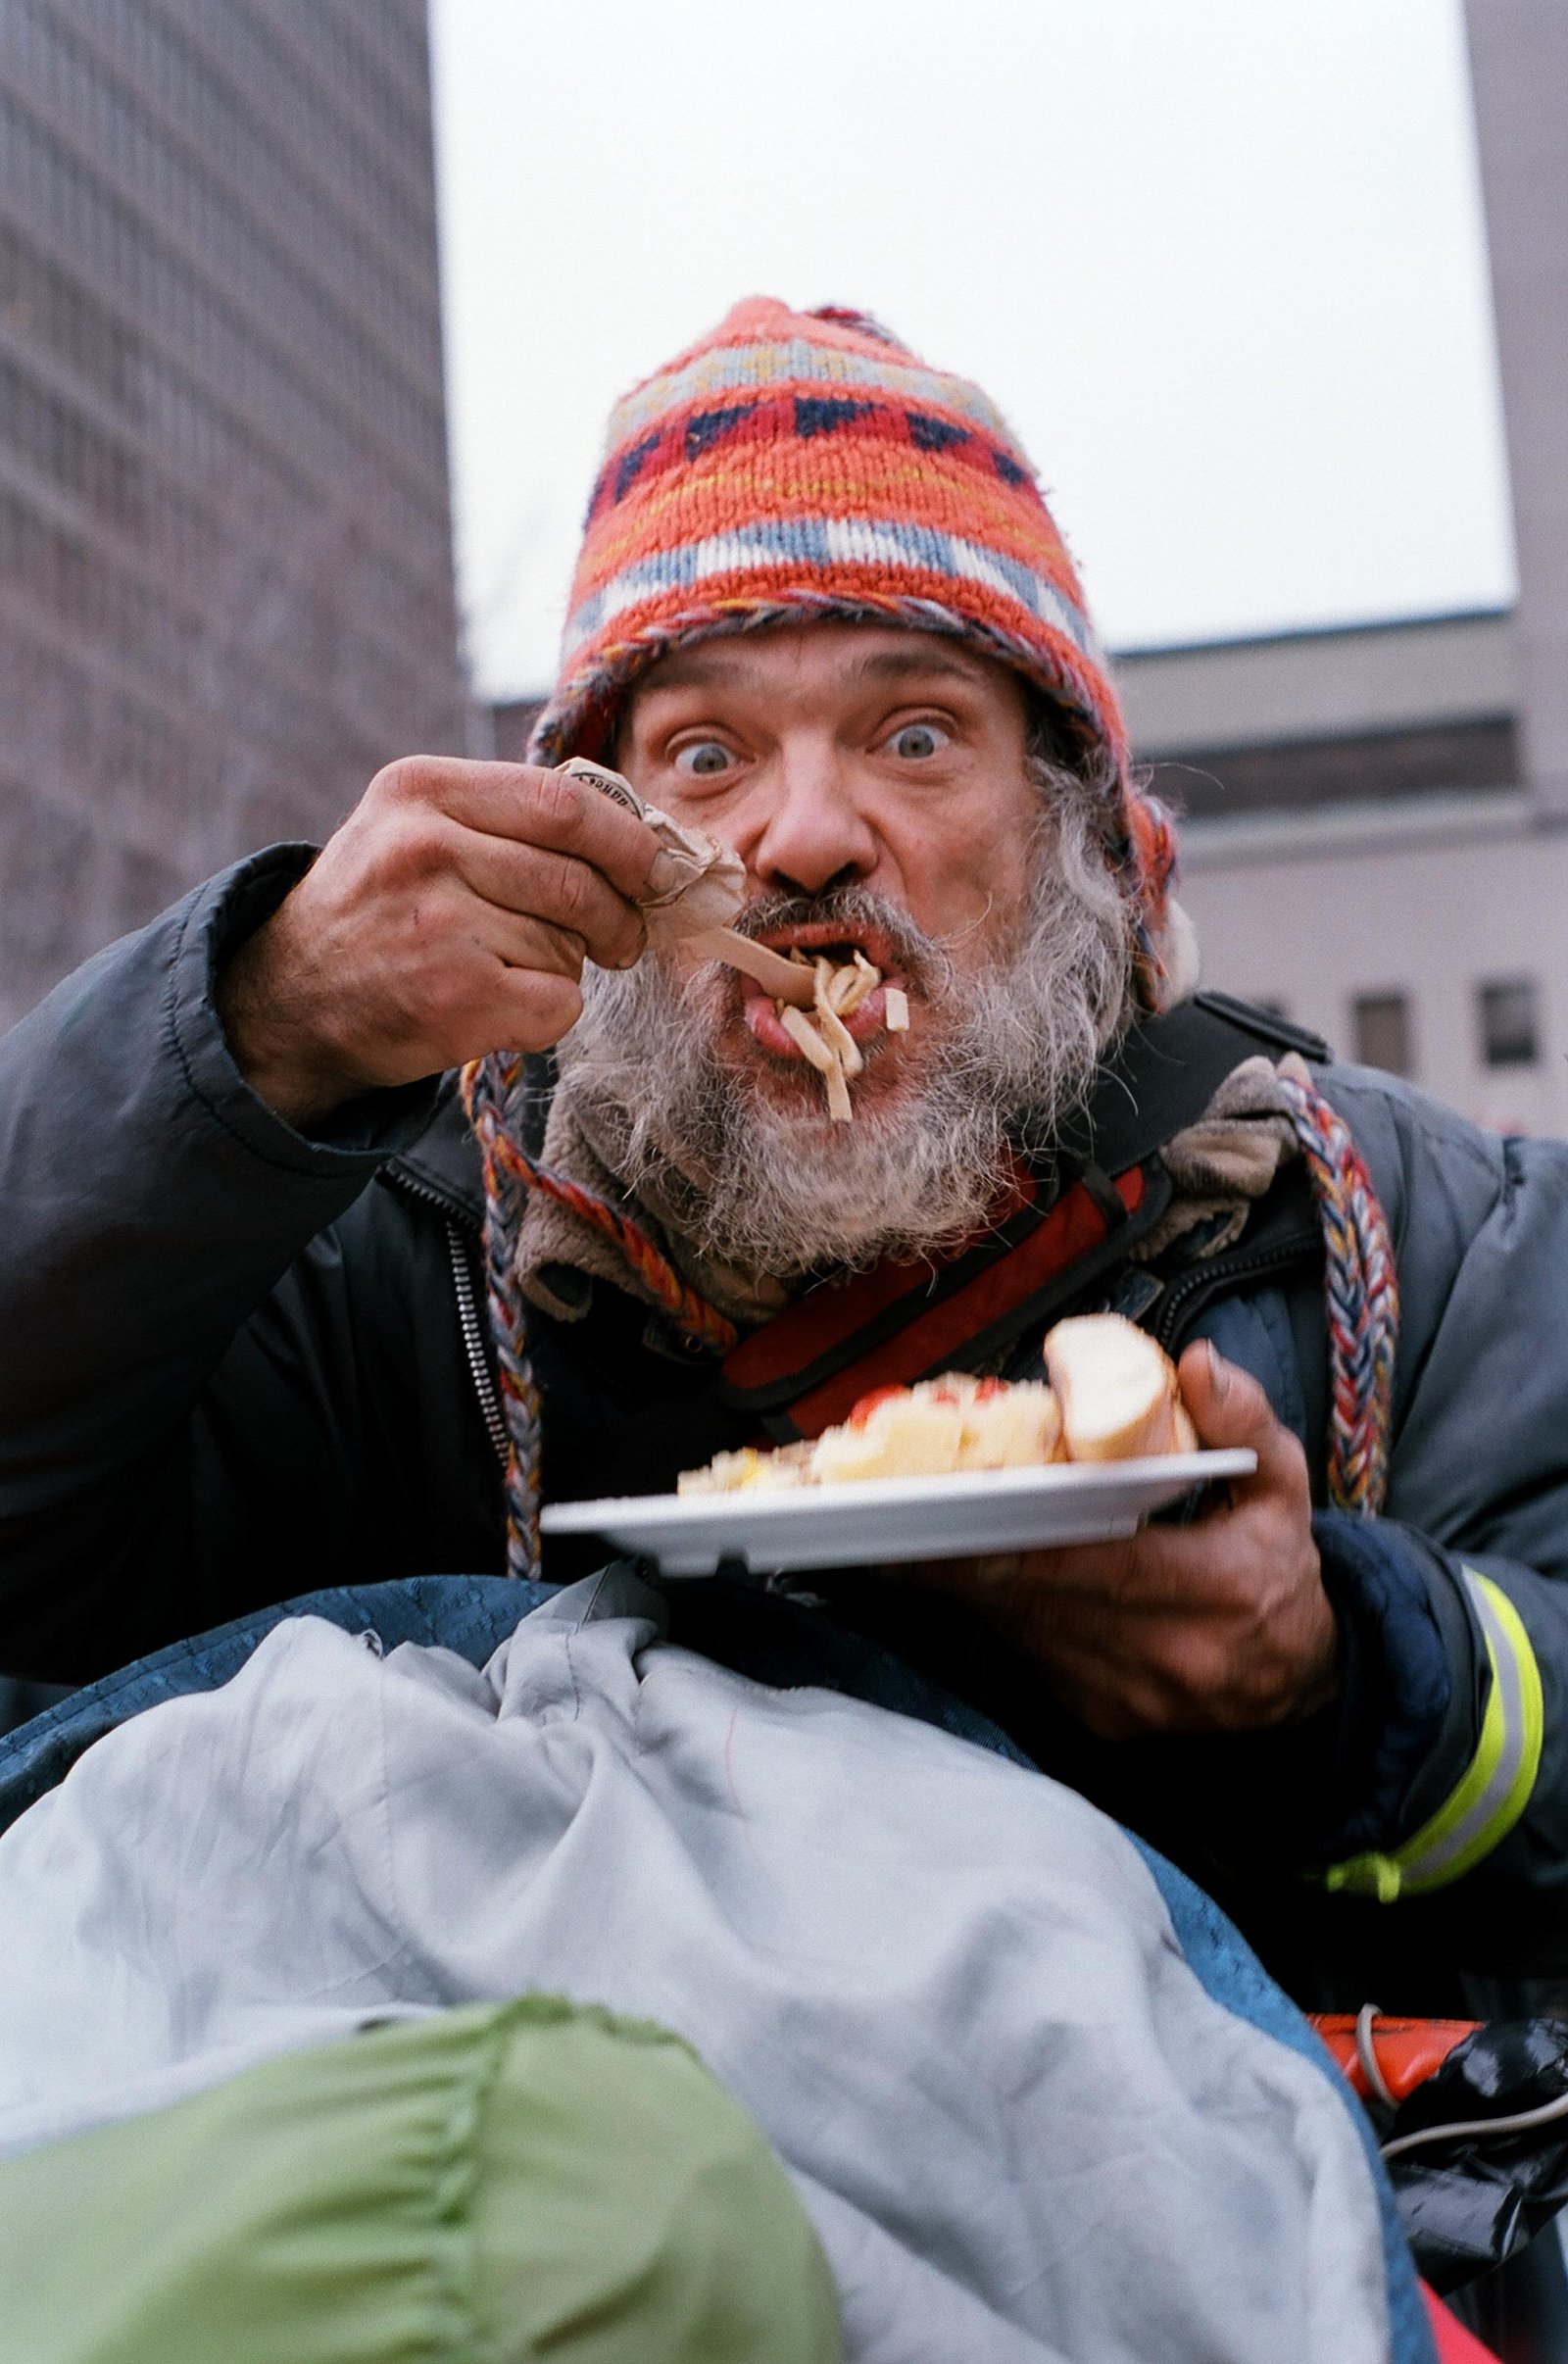 Homeless guy eating